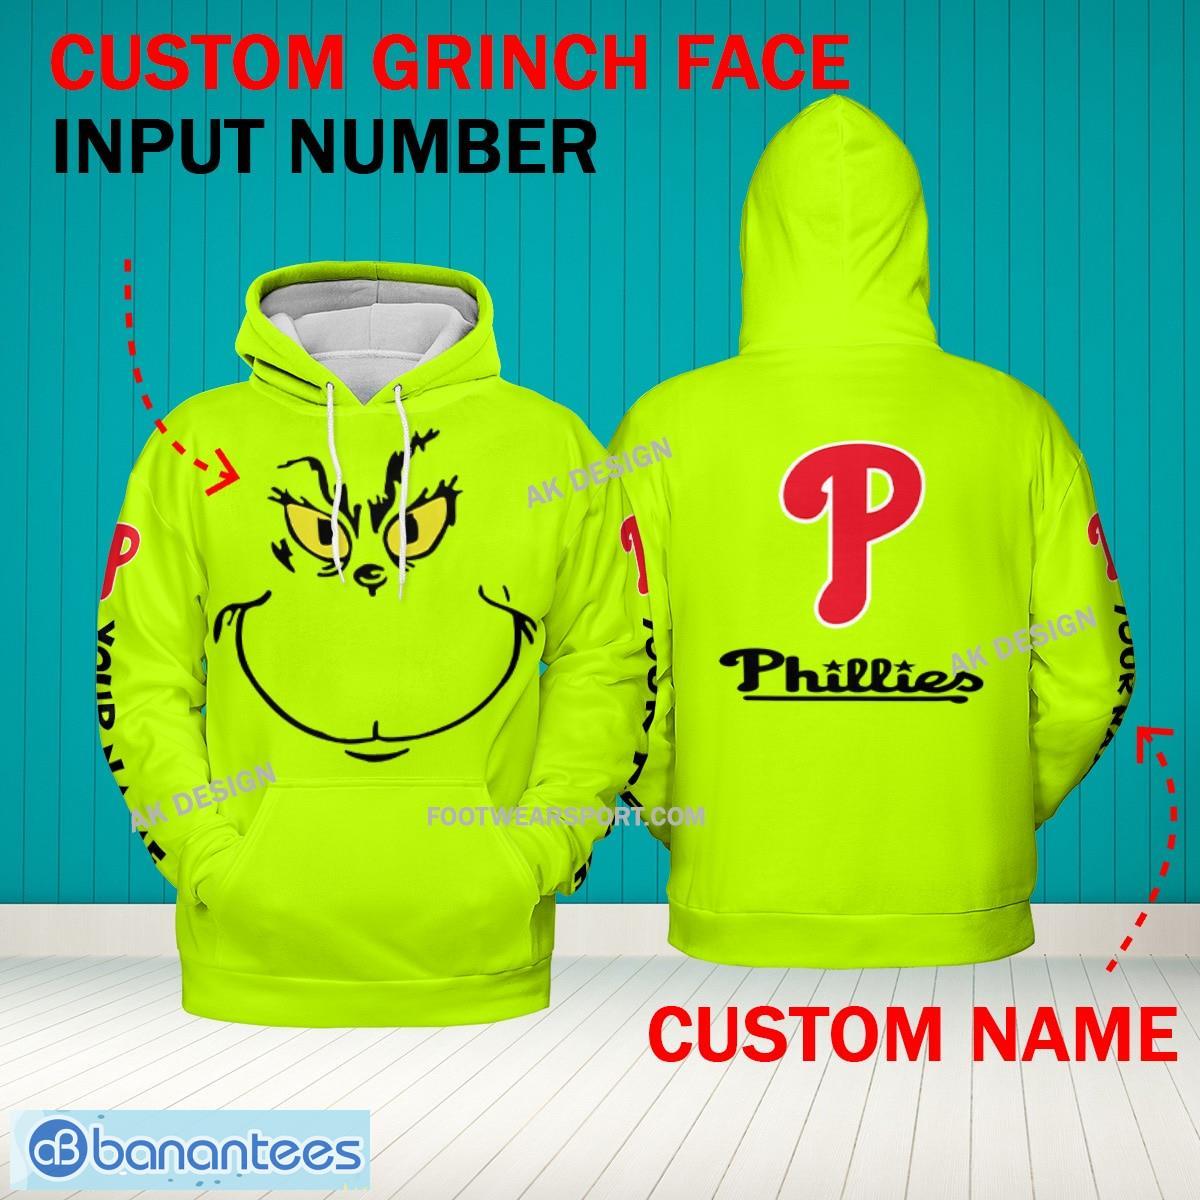 Grinch Face Philadelphia Phillies 3D Hoodie, Zip Hoodie, Sweater Green AOP Custom Number And Name - Grinch Face MLB Philadelphia Phillies 3D Hoodie